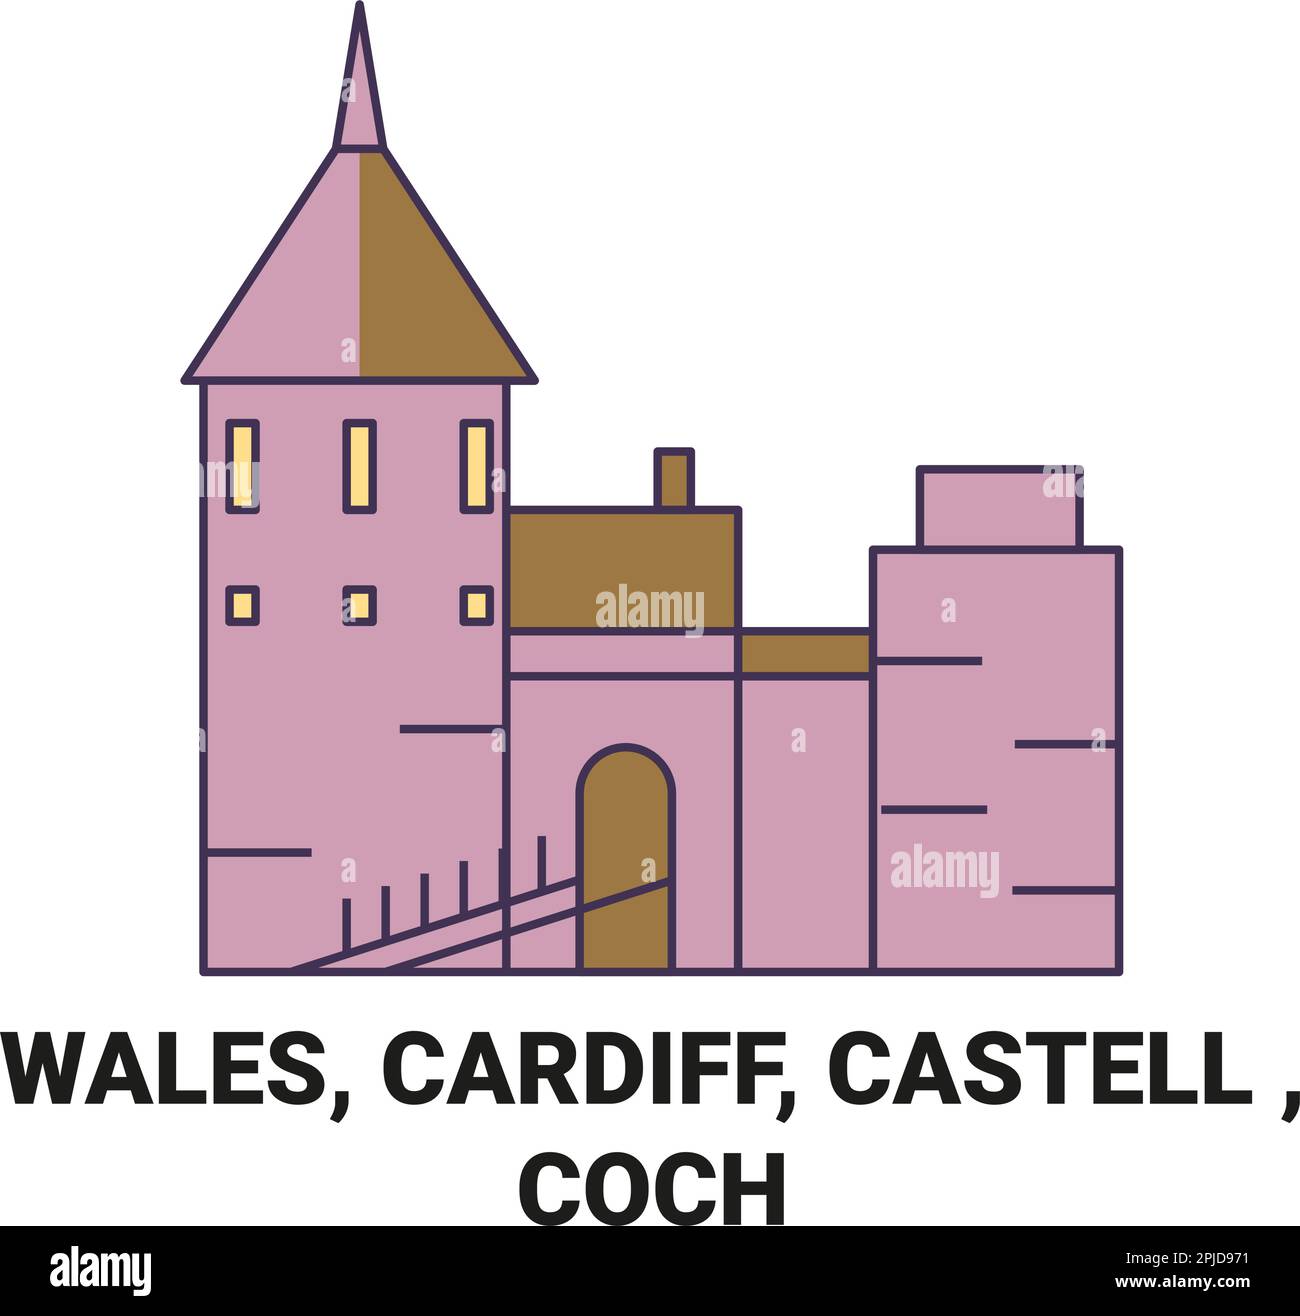 Wales, Cardiff, Castell , Coch travel landmark vector illustration Stock Vector